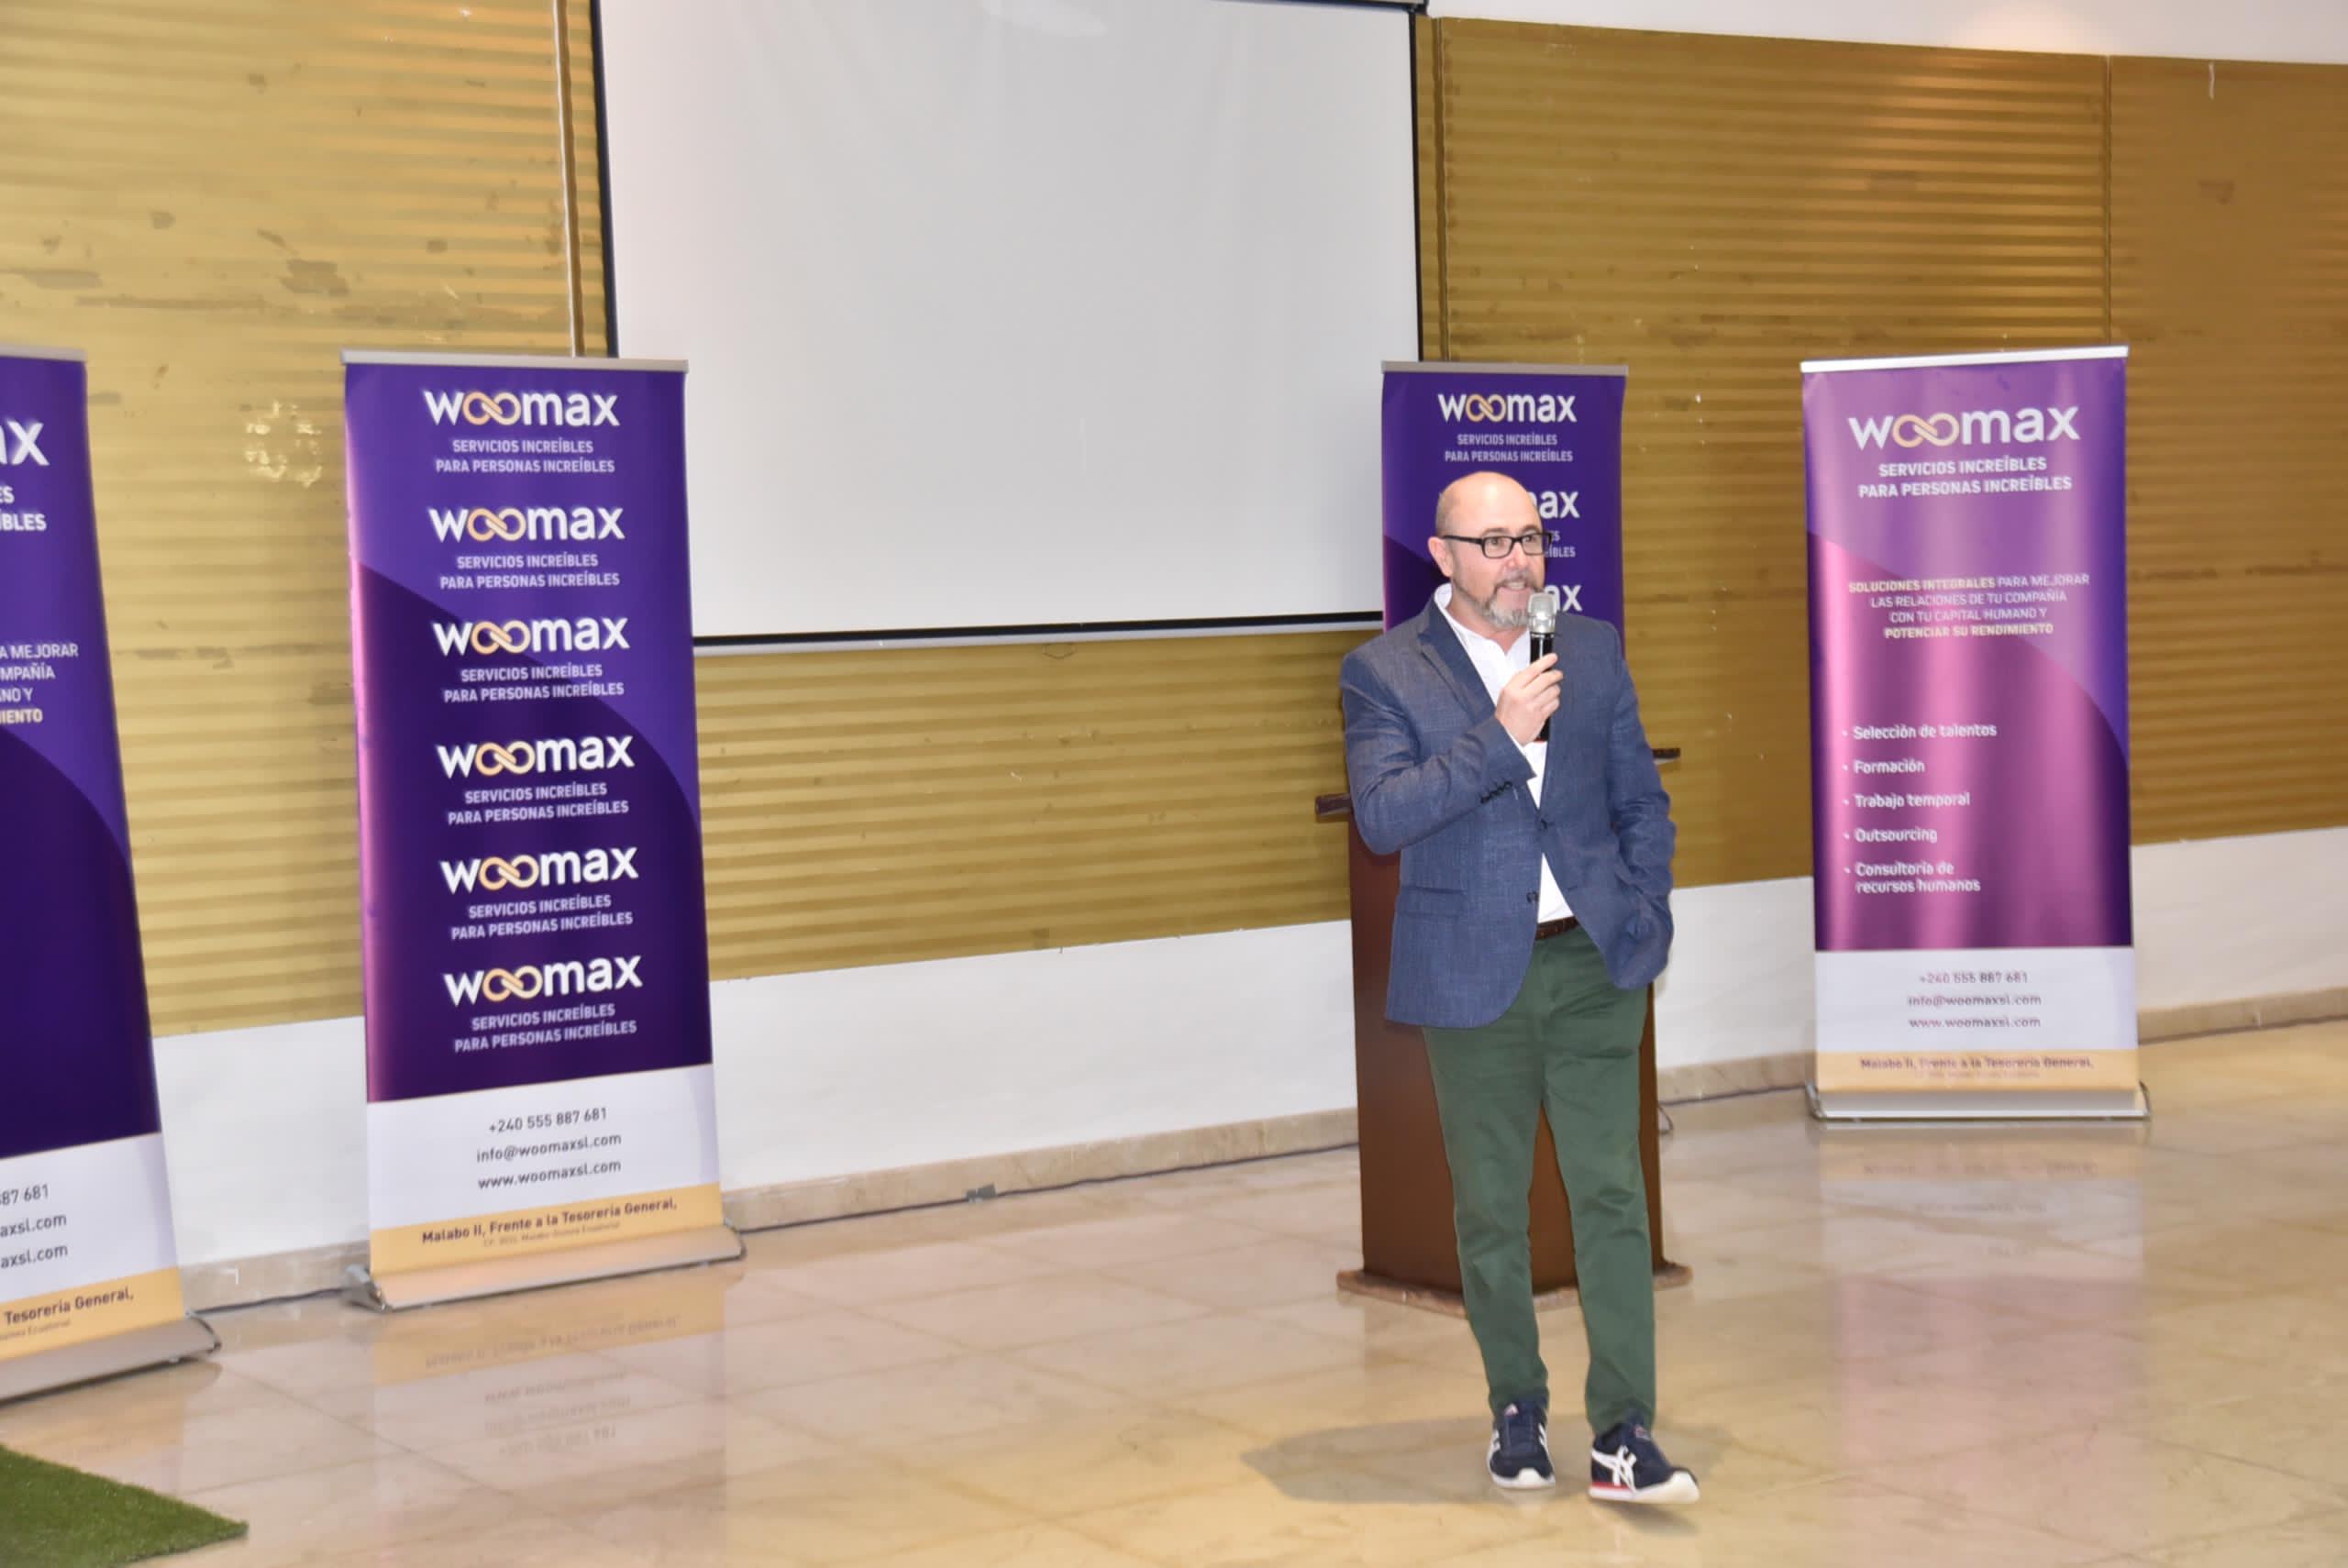 Jordi Alemany regresa a su país tras compartir formaciones sobre liderazgo y ventas estratégicas en Malabo a invitación de Woomax